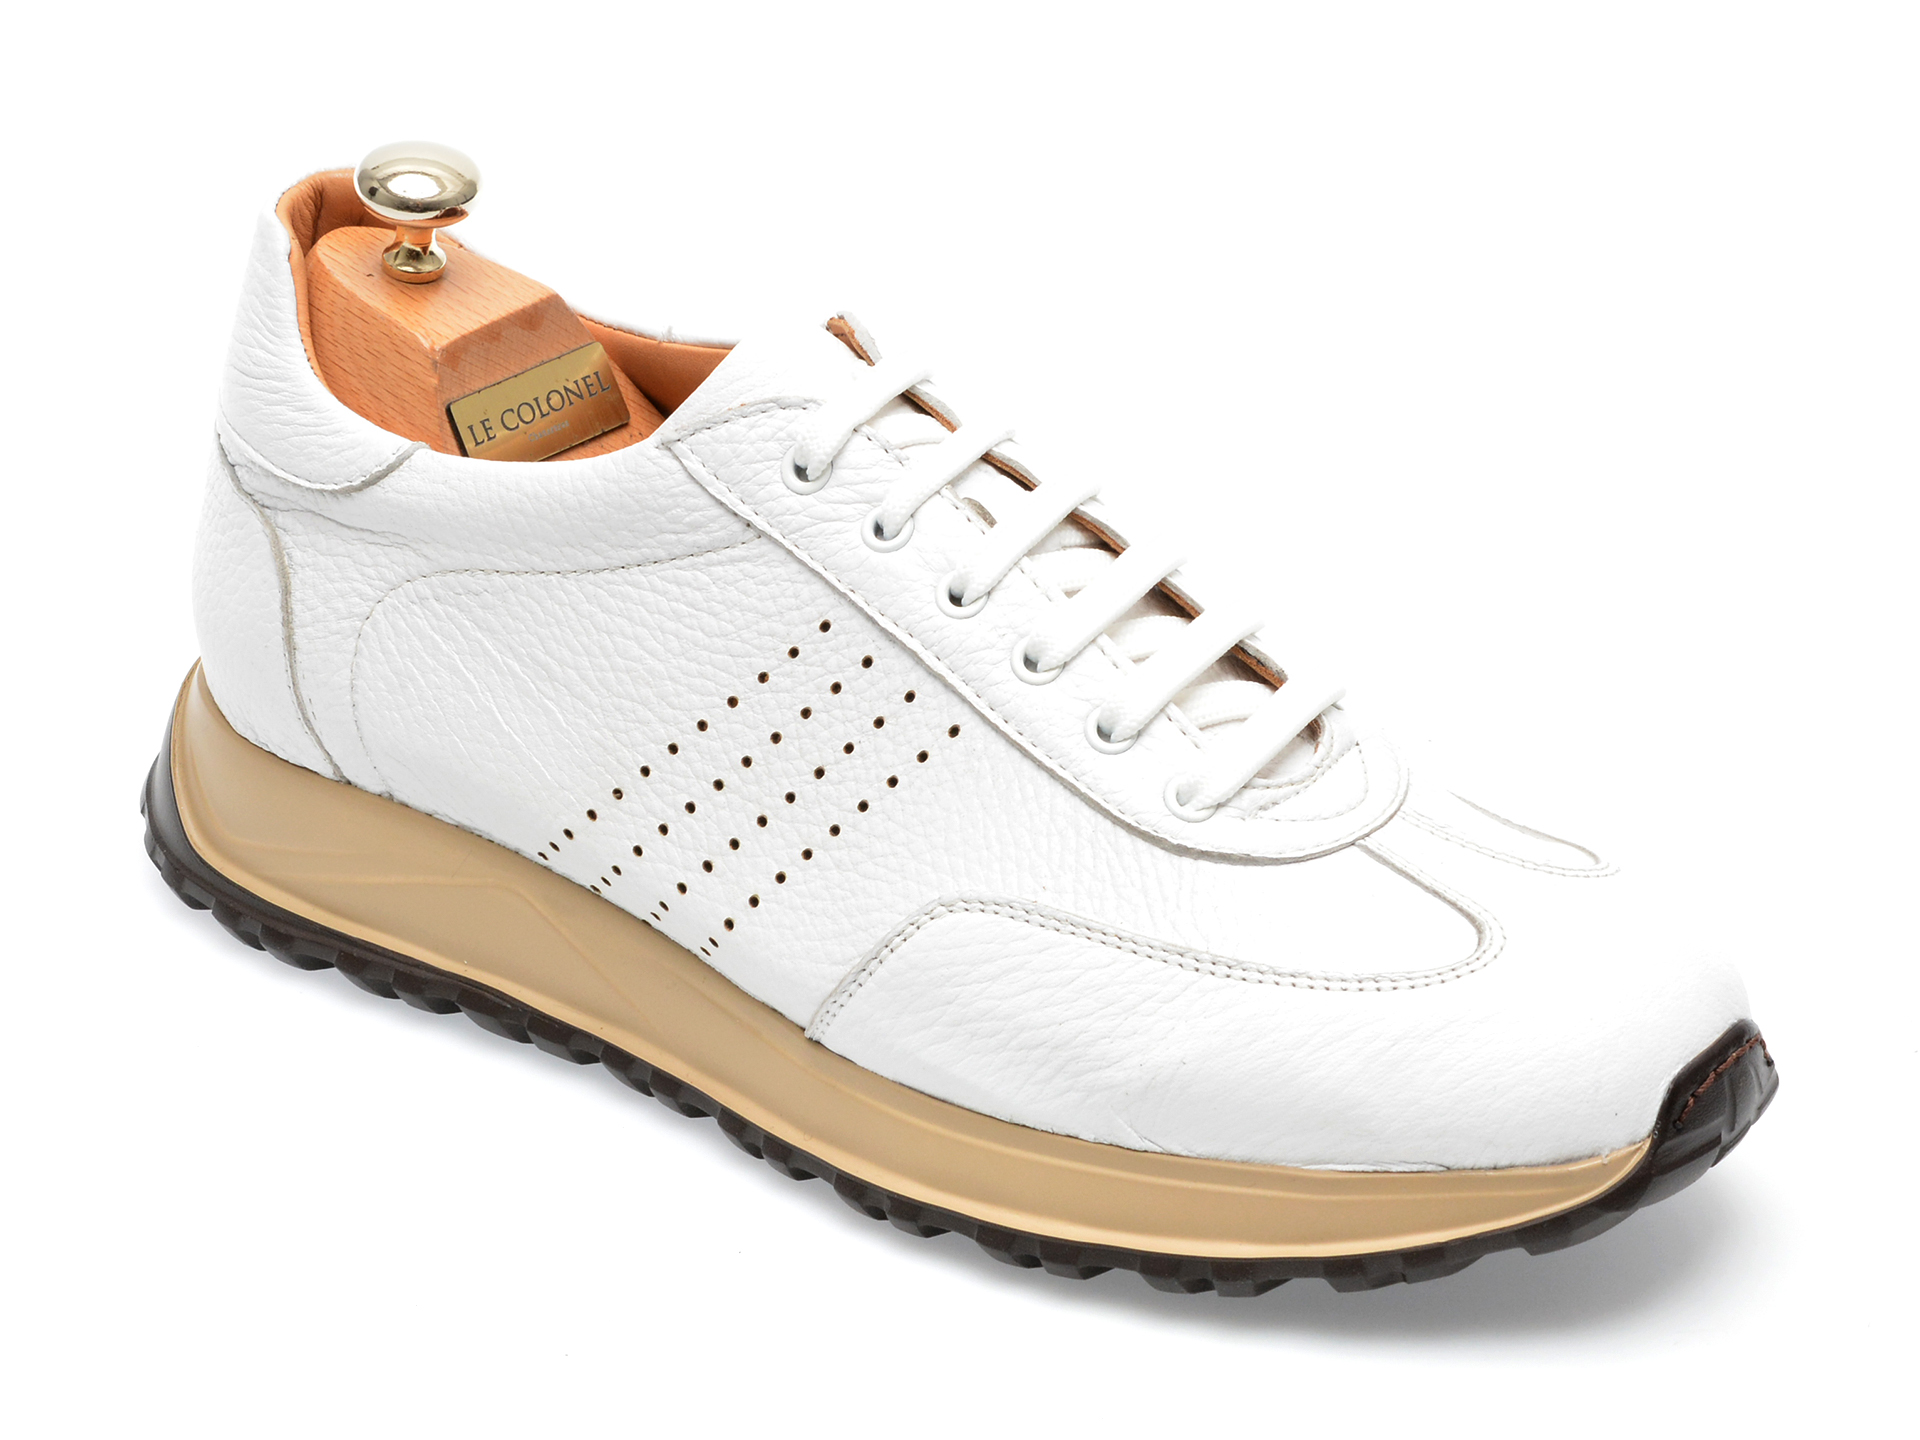 Pantofi LE COLONEL albi, 62818, din piele naturala Le Colonel Le Colonel